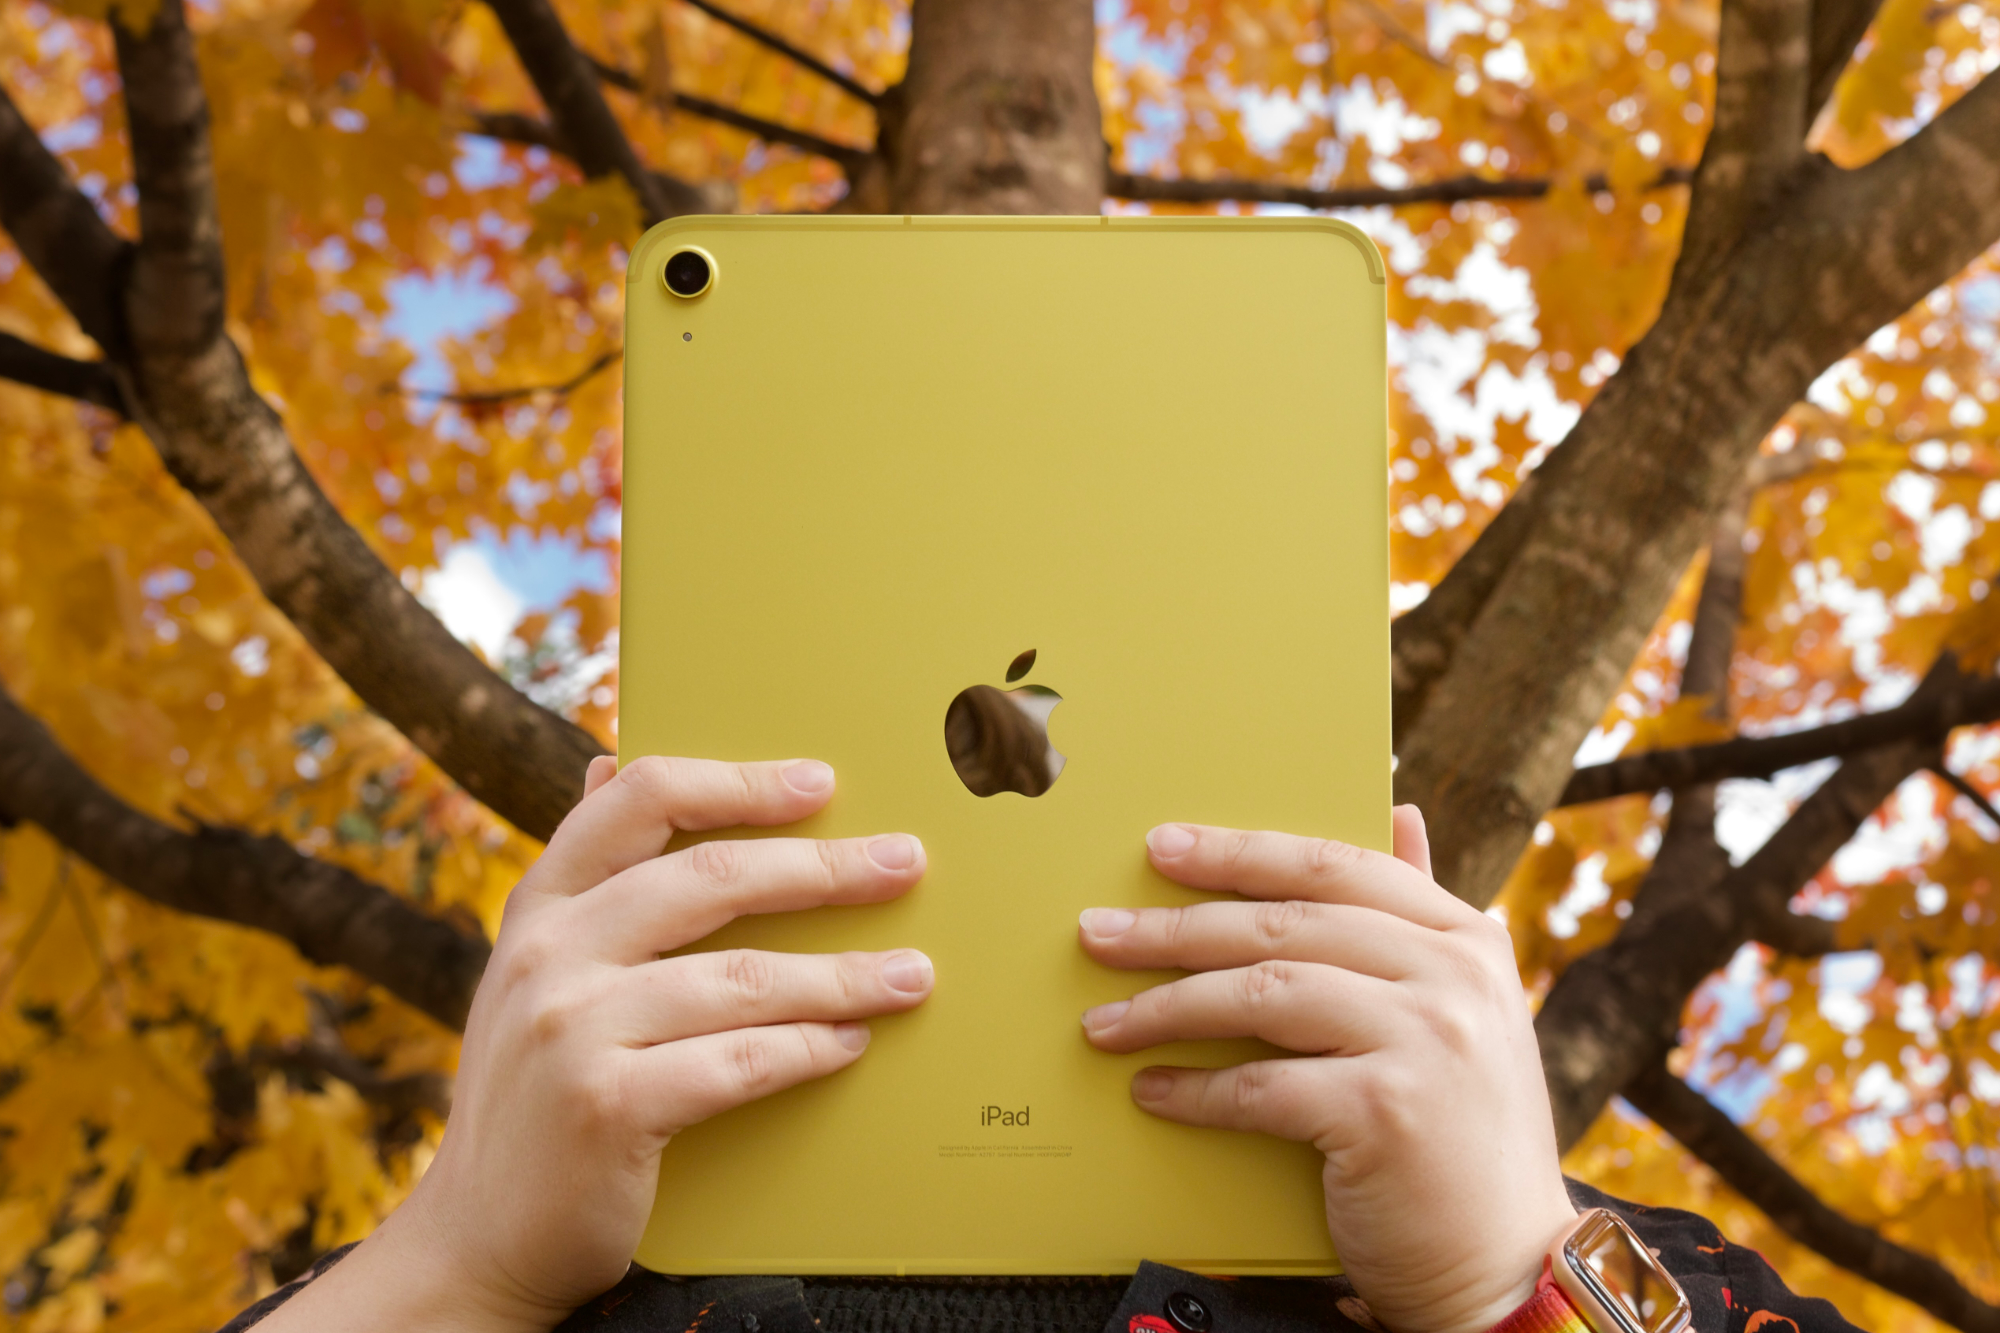 Qualcuno tiene in mano l'iPad giallo (2022) davanti a alberi con foglie arancioni e gialle.